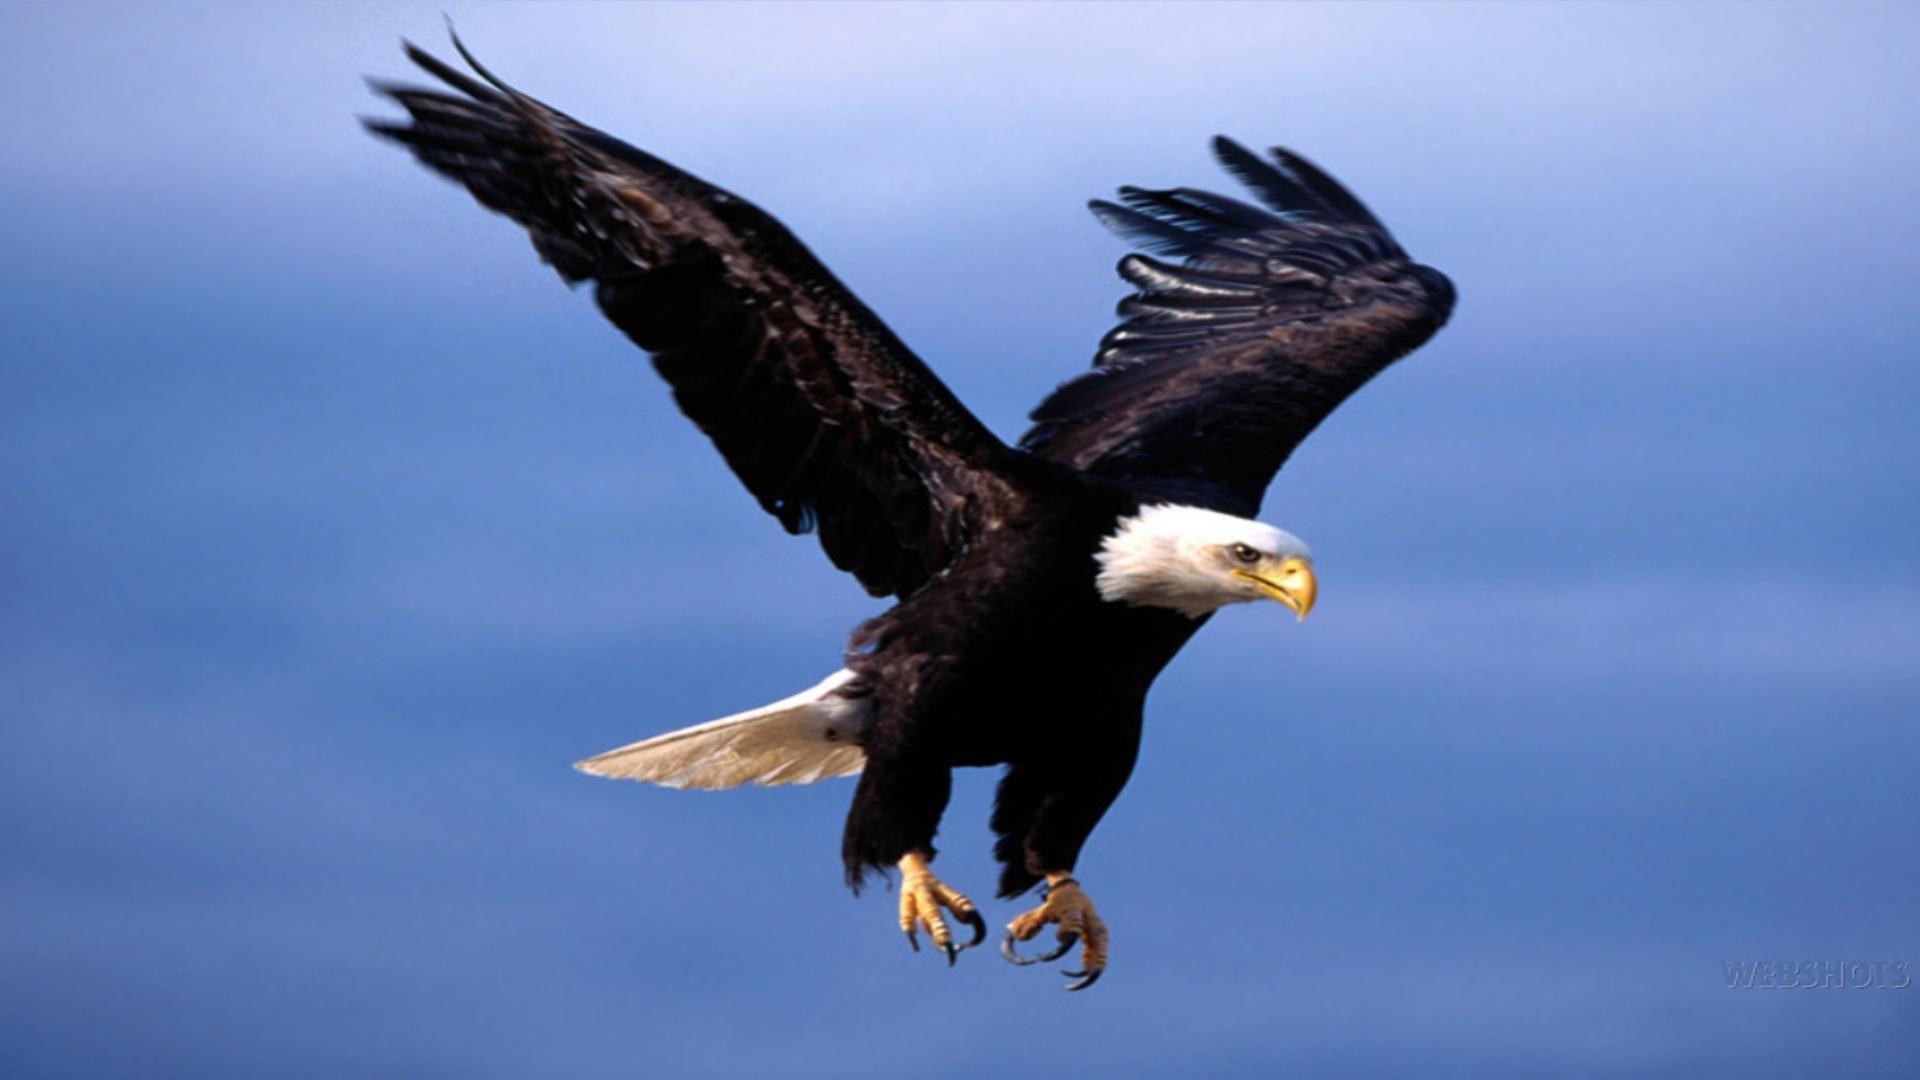 Flying eagle wallpaper free desktop background wallpaper image